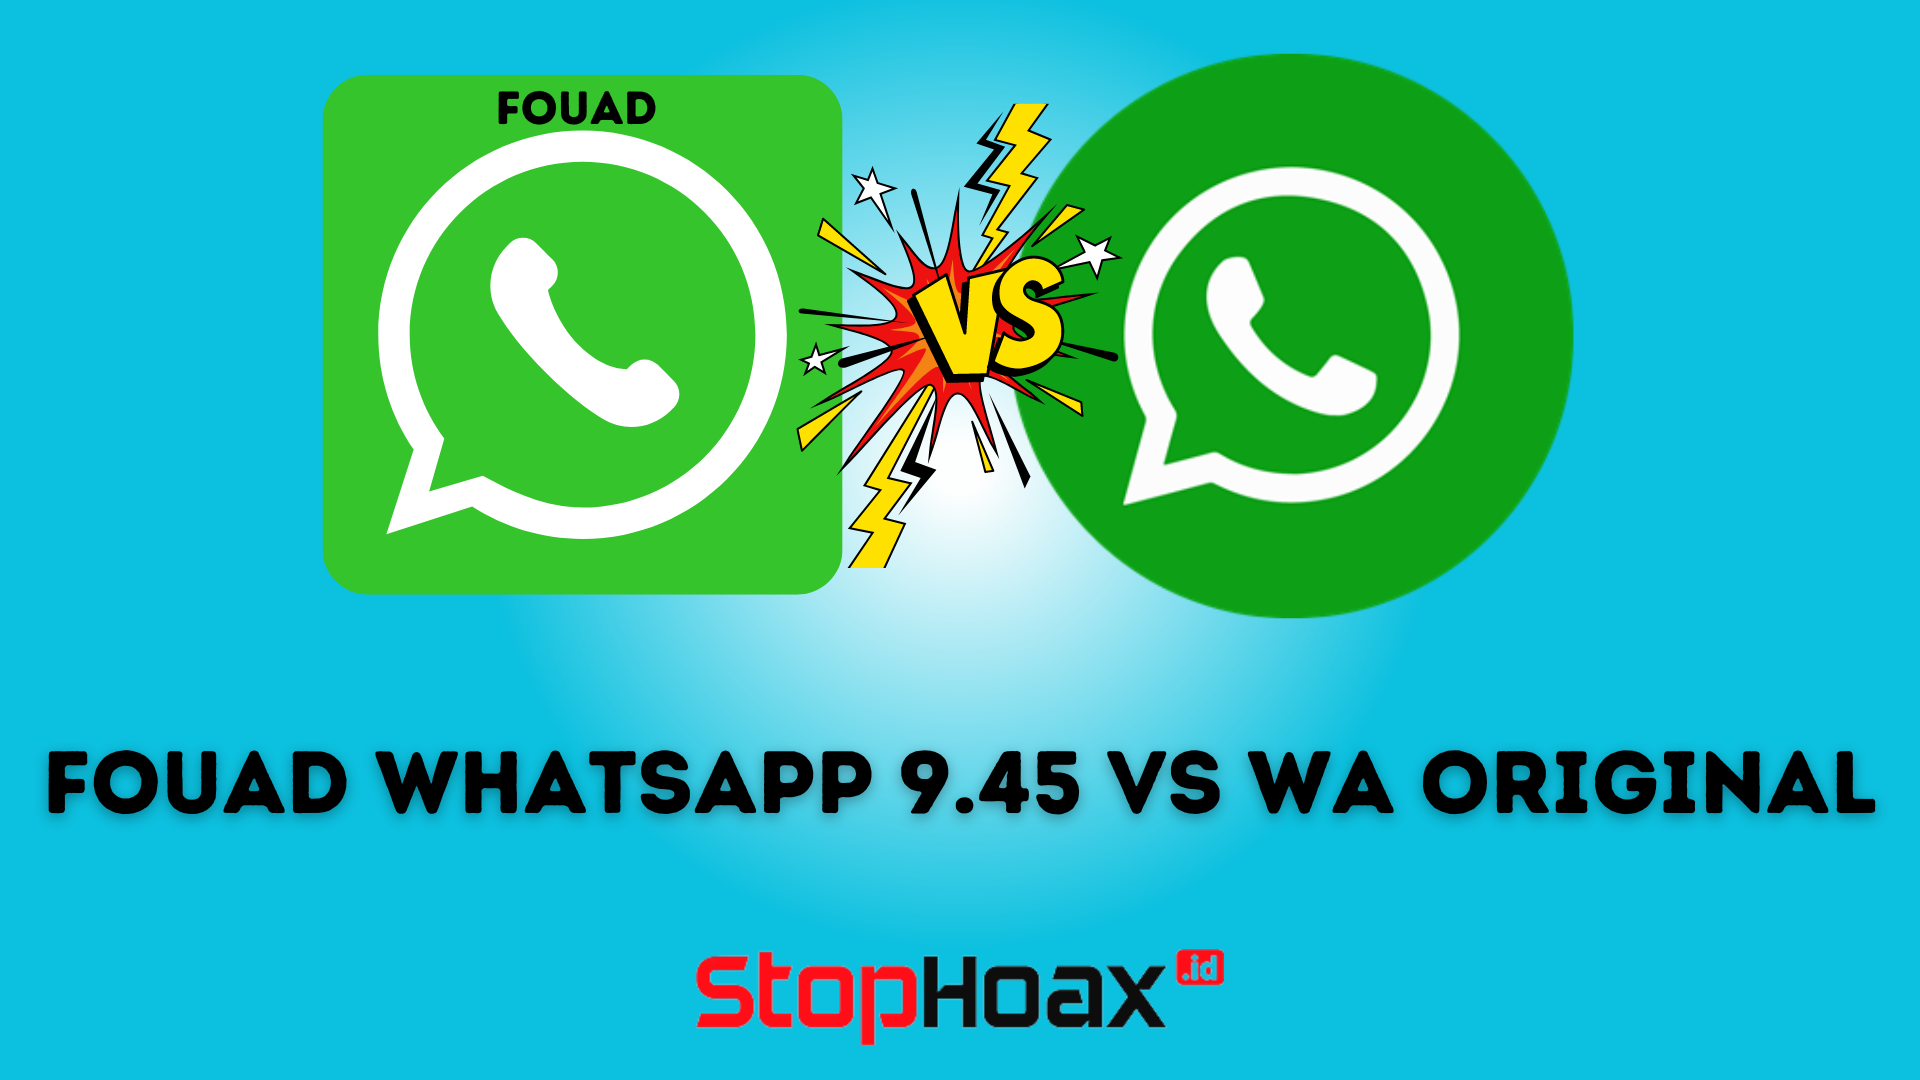 Fouad WhatsApp 9.45 vs WhatsApp Original Manakah yang Lebih Baik